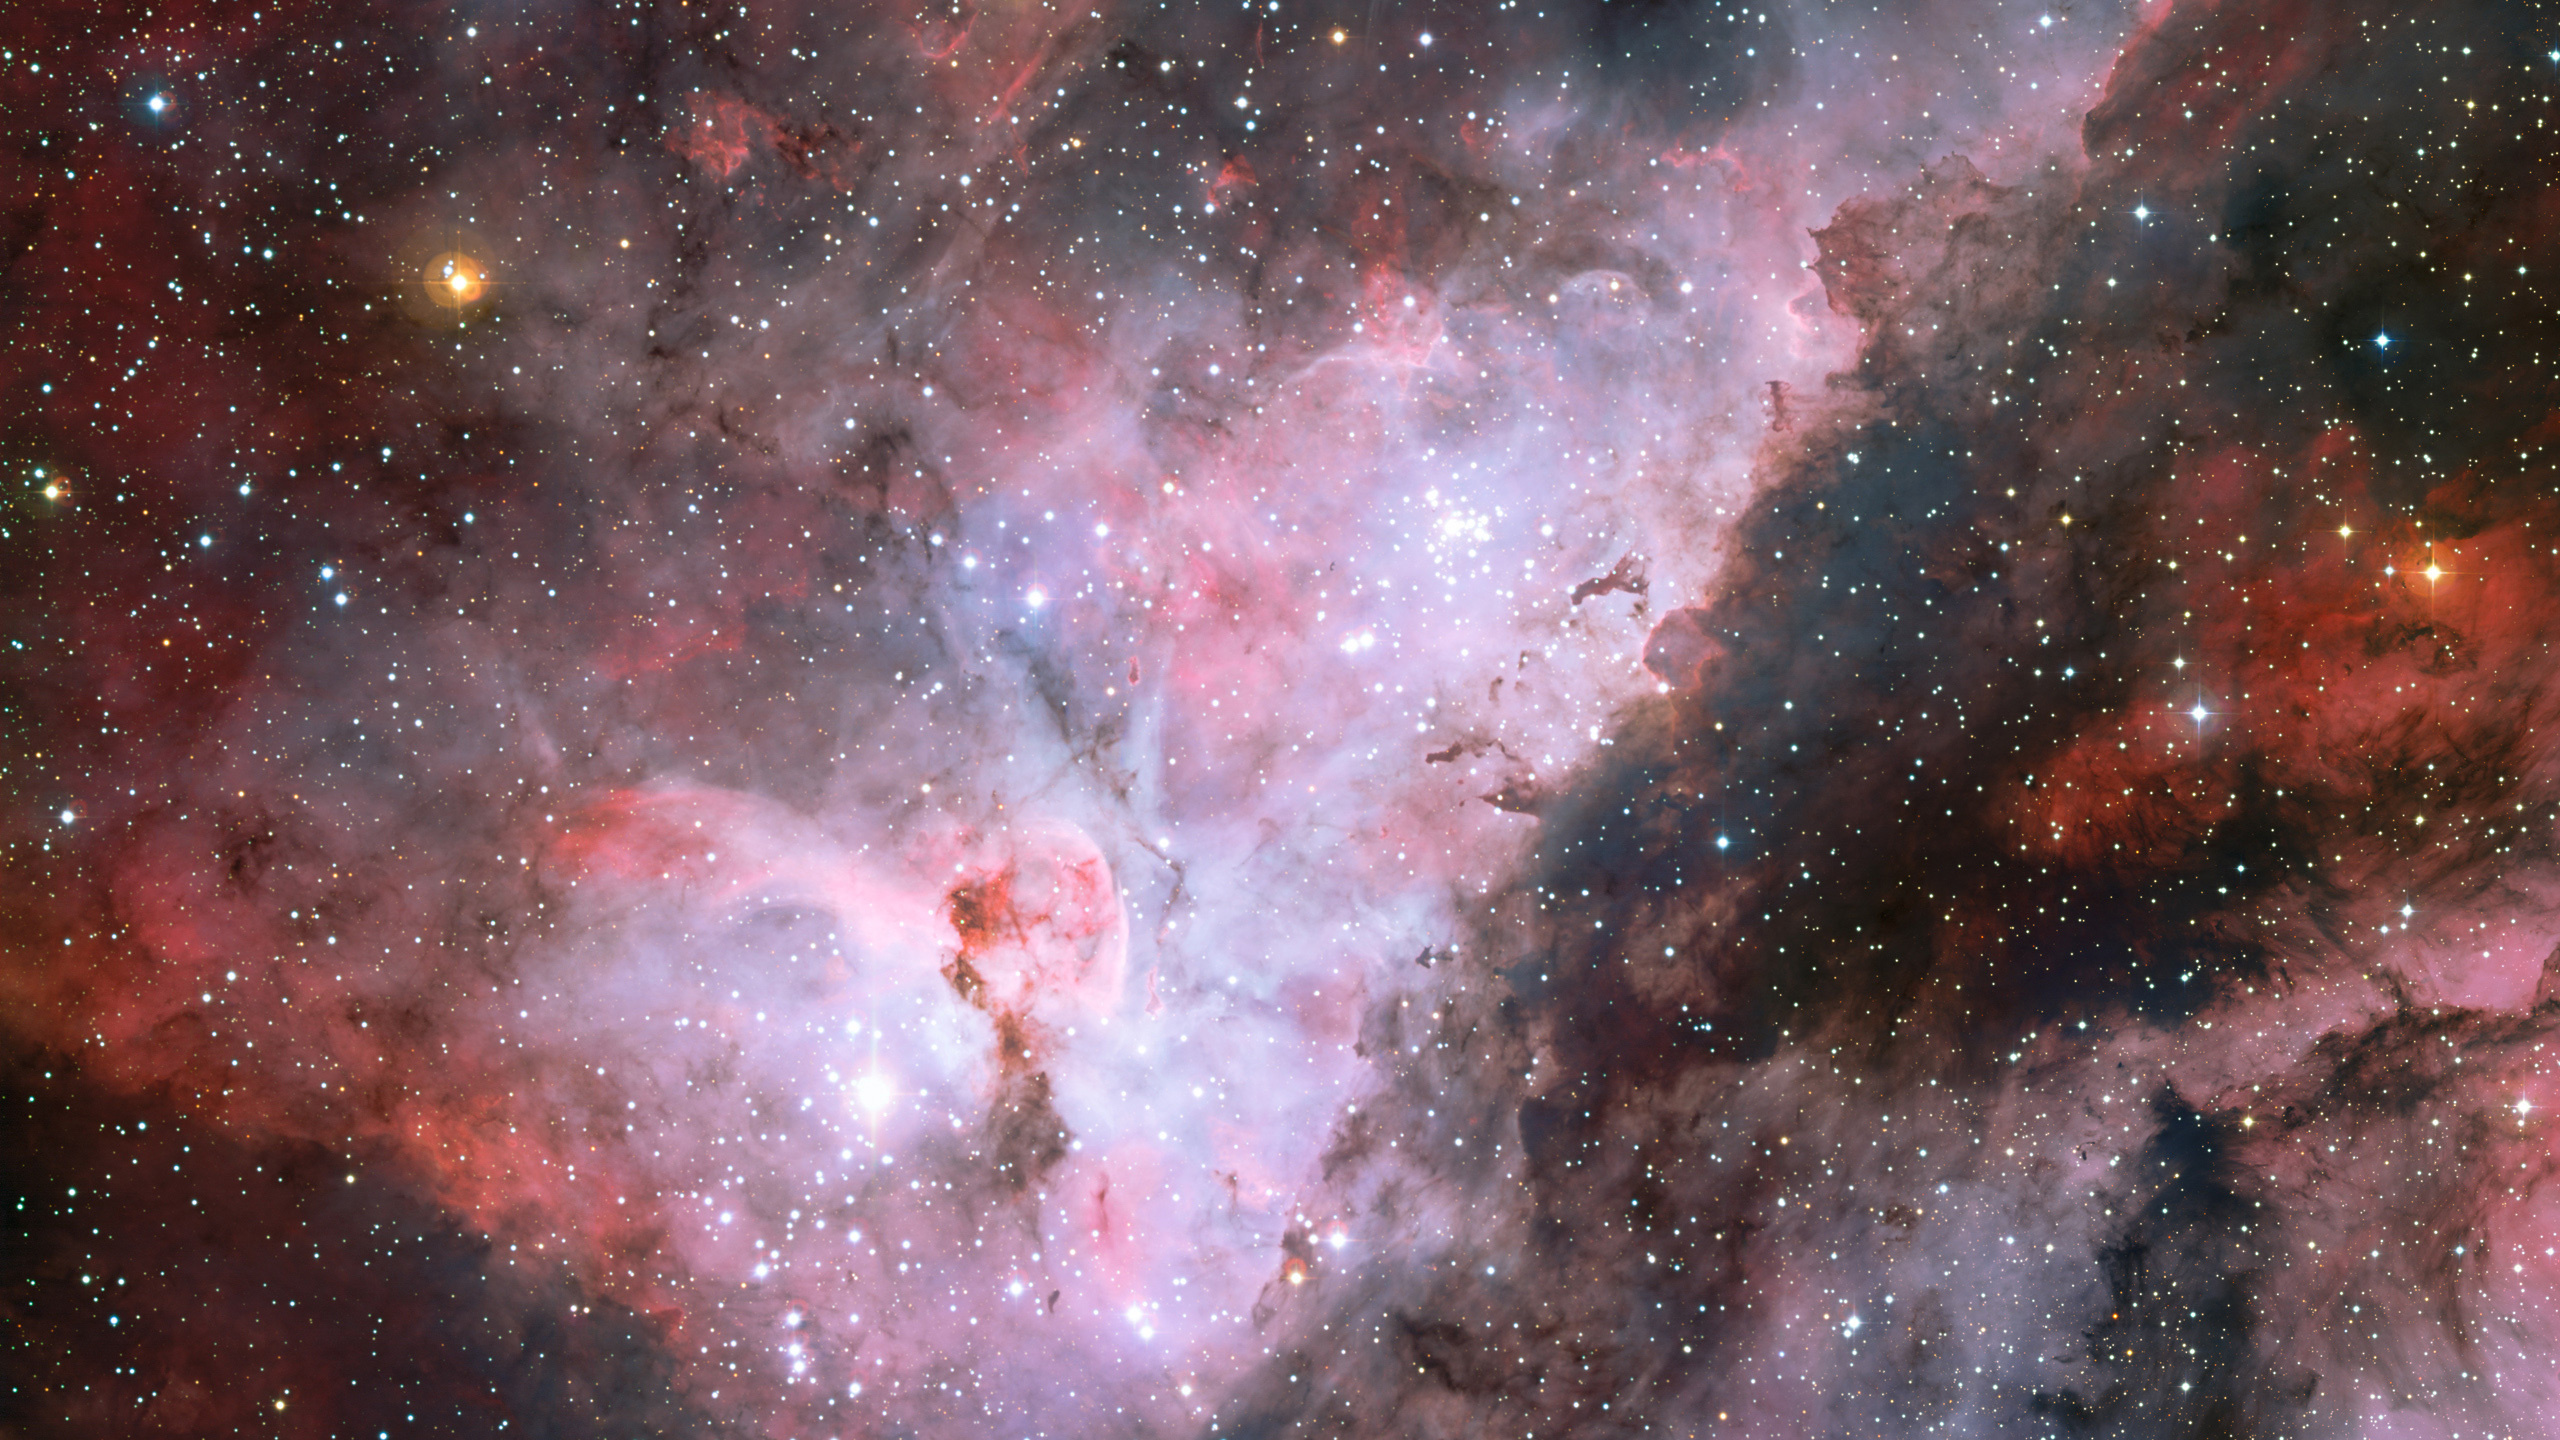 Carina星云, 明星, 哈勃太空望远镜, 天文学对象, 外层空间 壁纸 2560x1440 允许